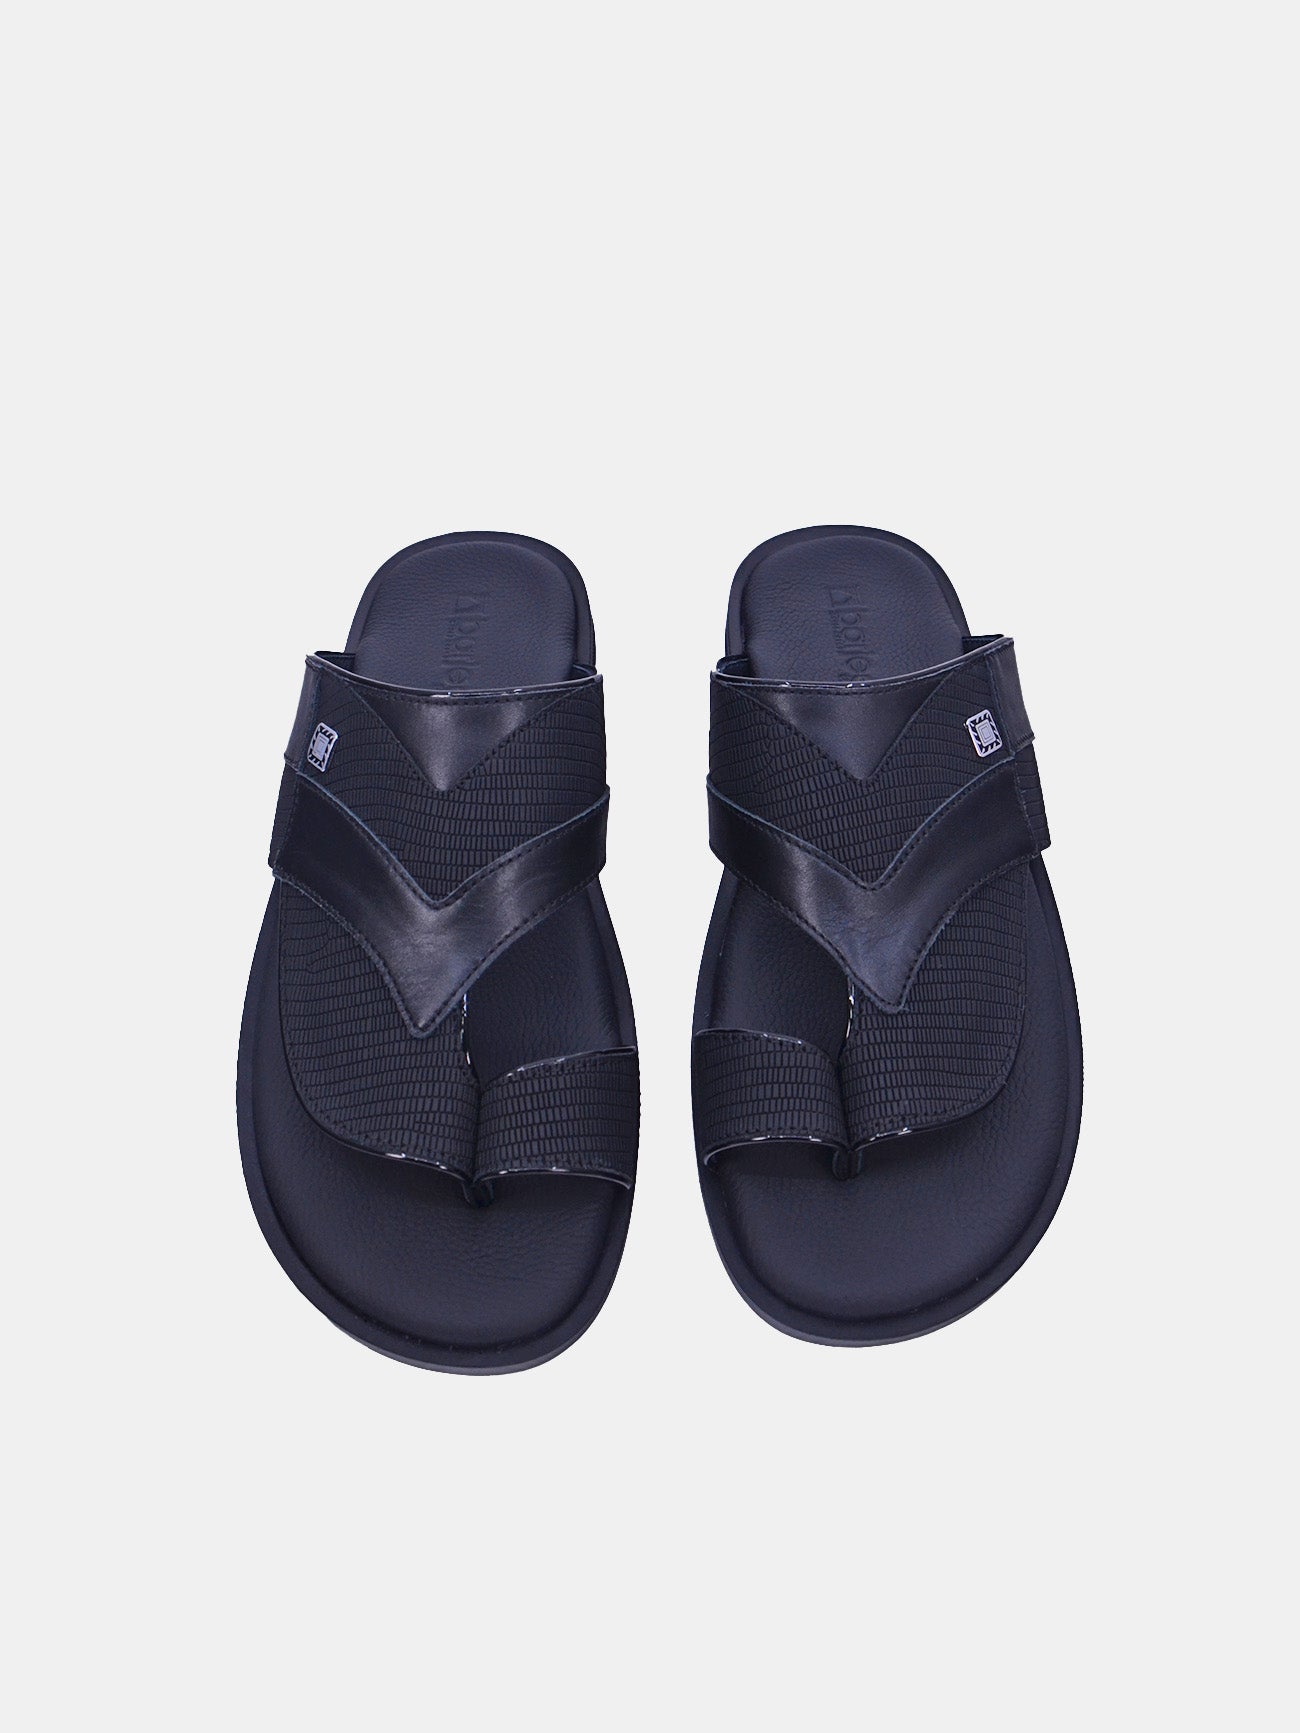 Barjeel Uno 175-042 Men's Sandals #color_Black